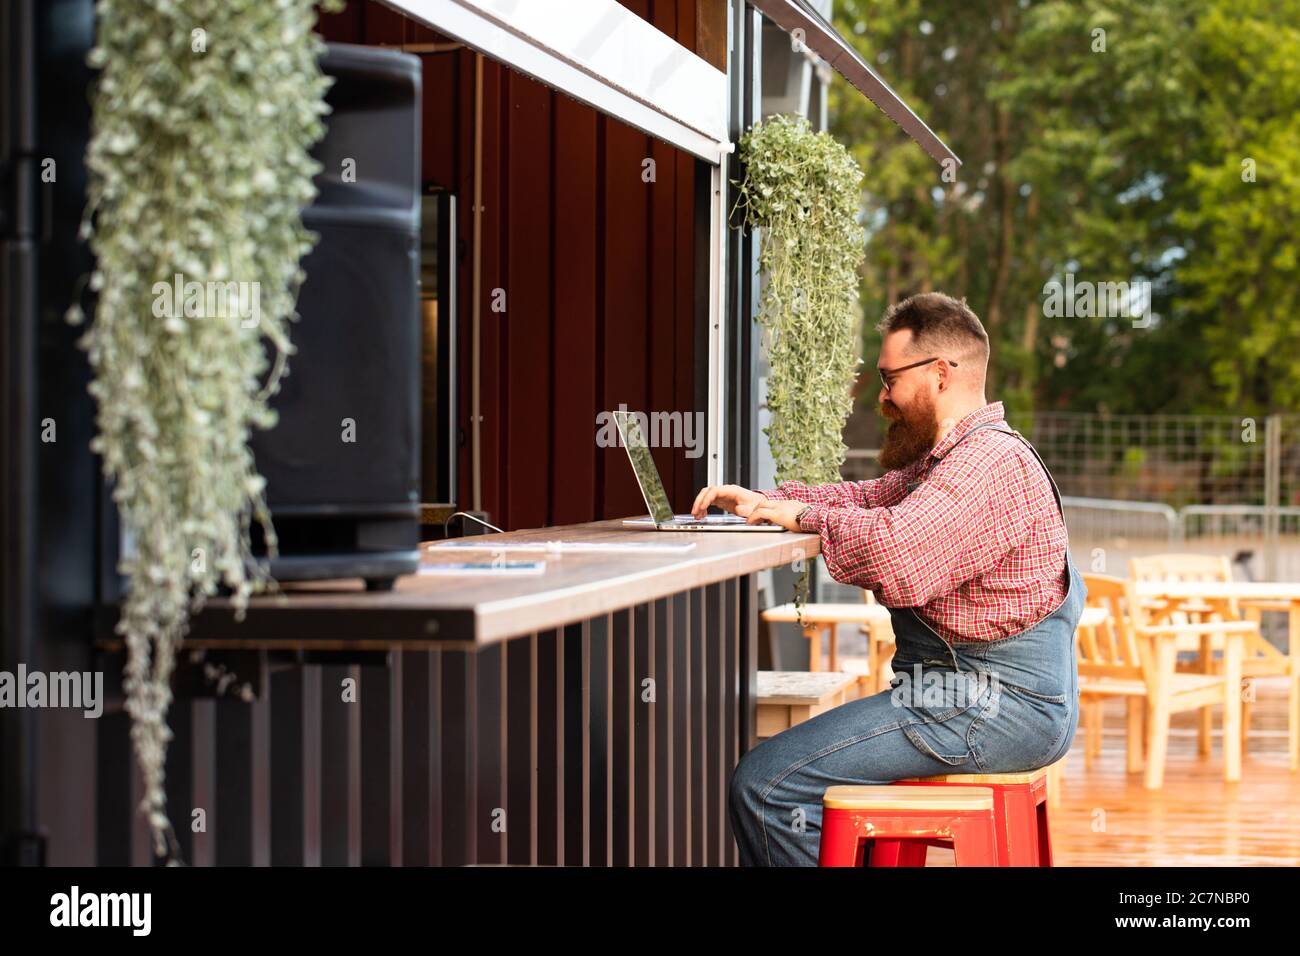 Portrait d'un boxeur hippster freelance à barbes, portant une combinaison bleue et une chemise à carreaux, travaillant sur un ordinateur portable assis dans un café/restaurant à l'extérieur. Côté Banque D'Images